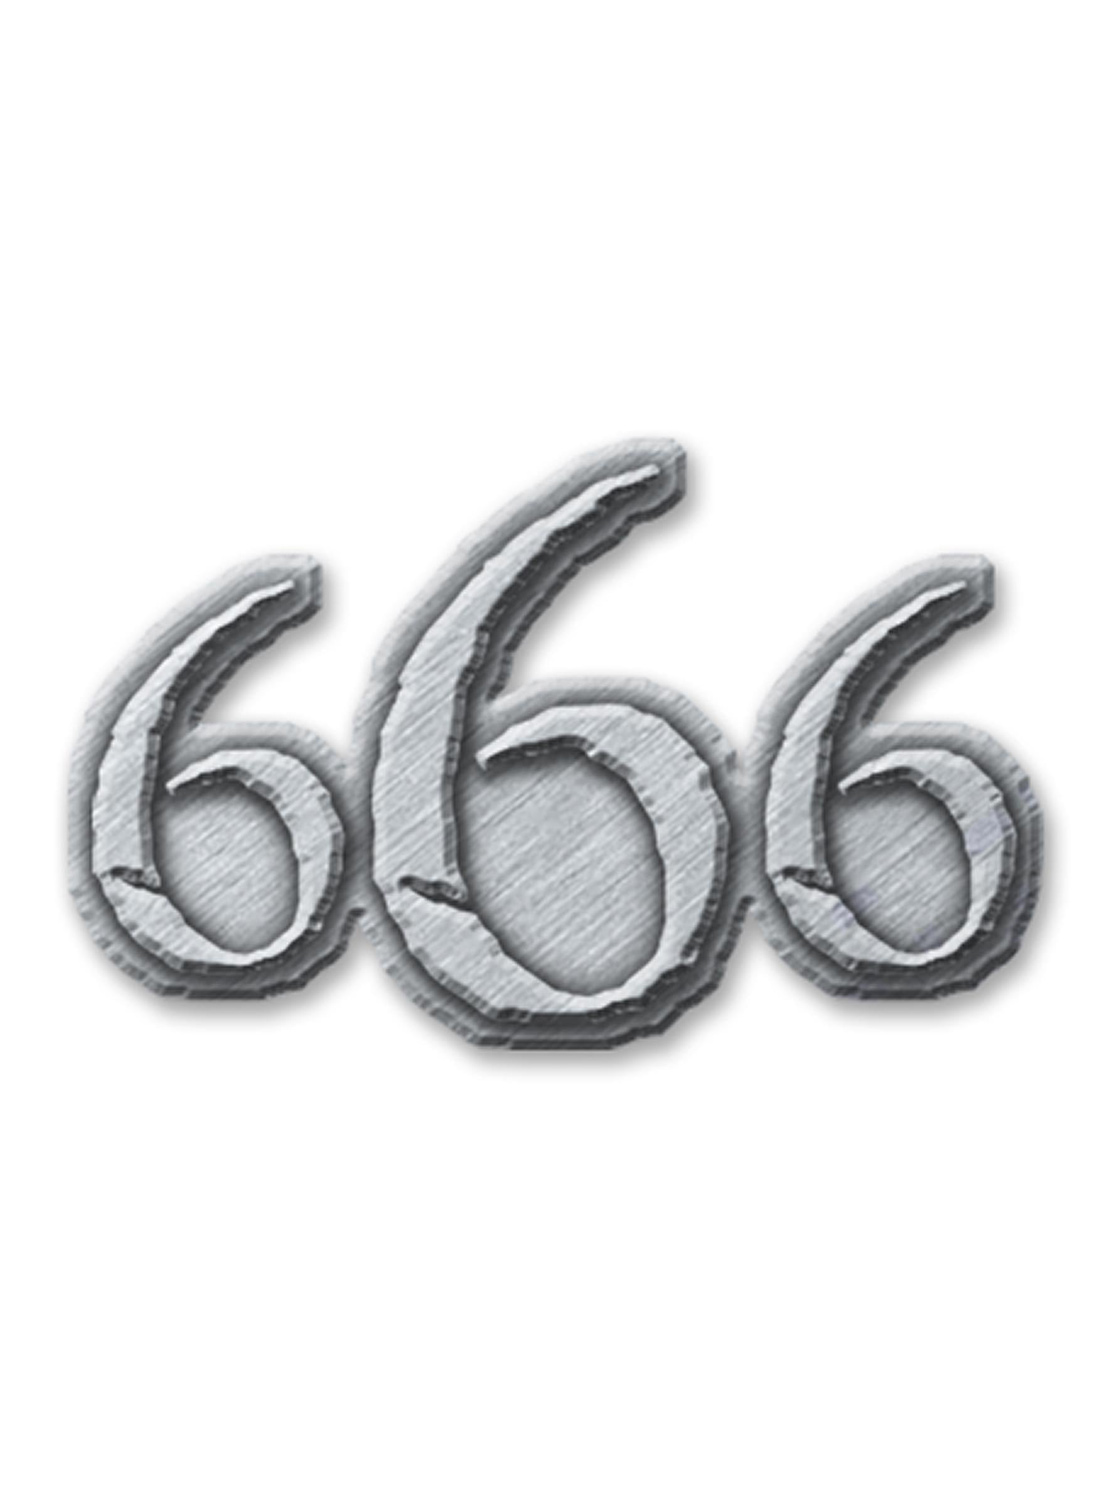 666 Metal Pin Badge